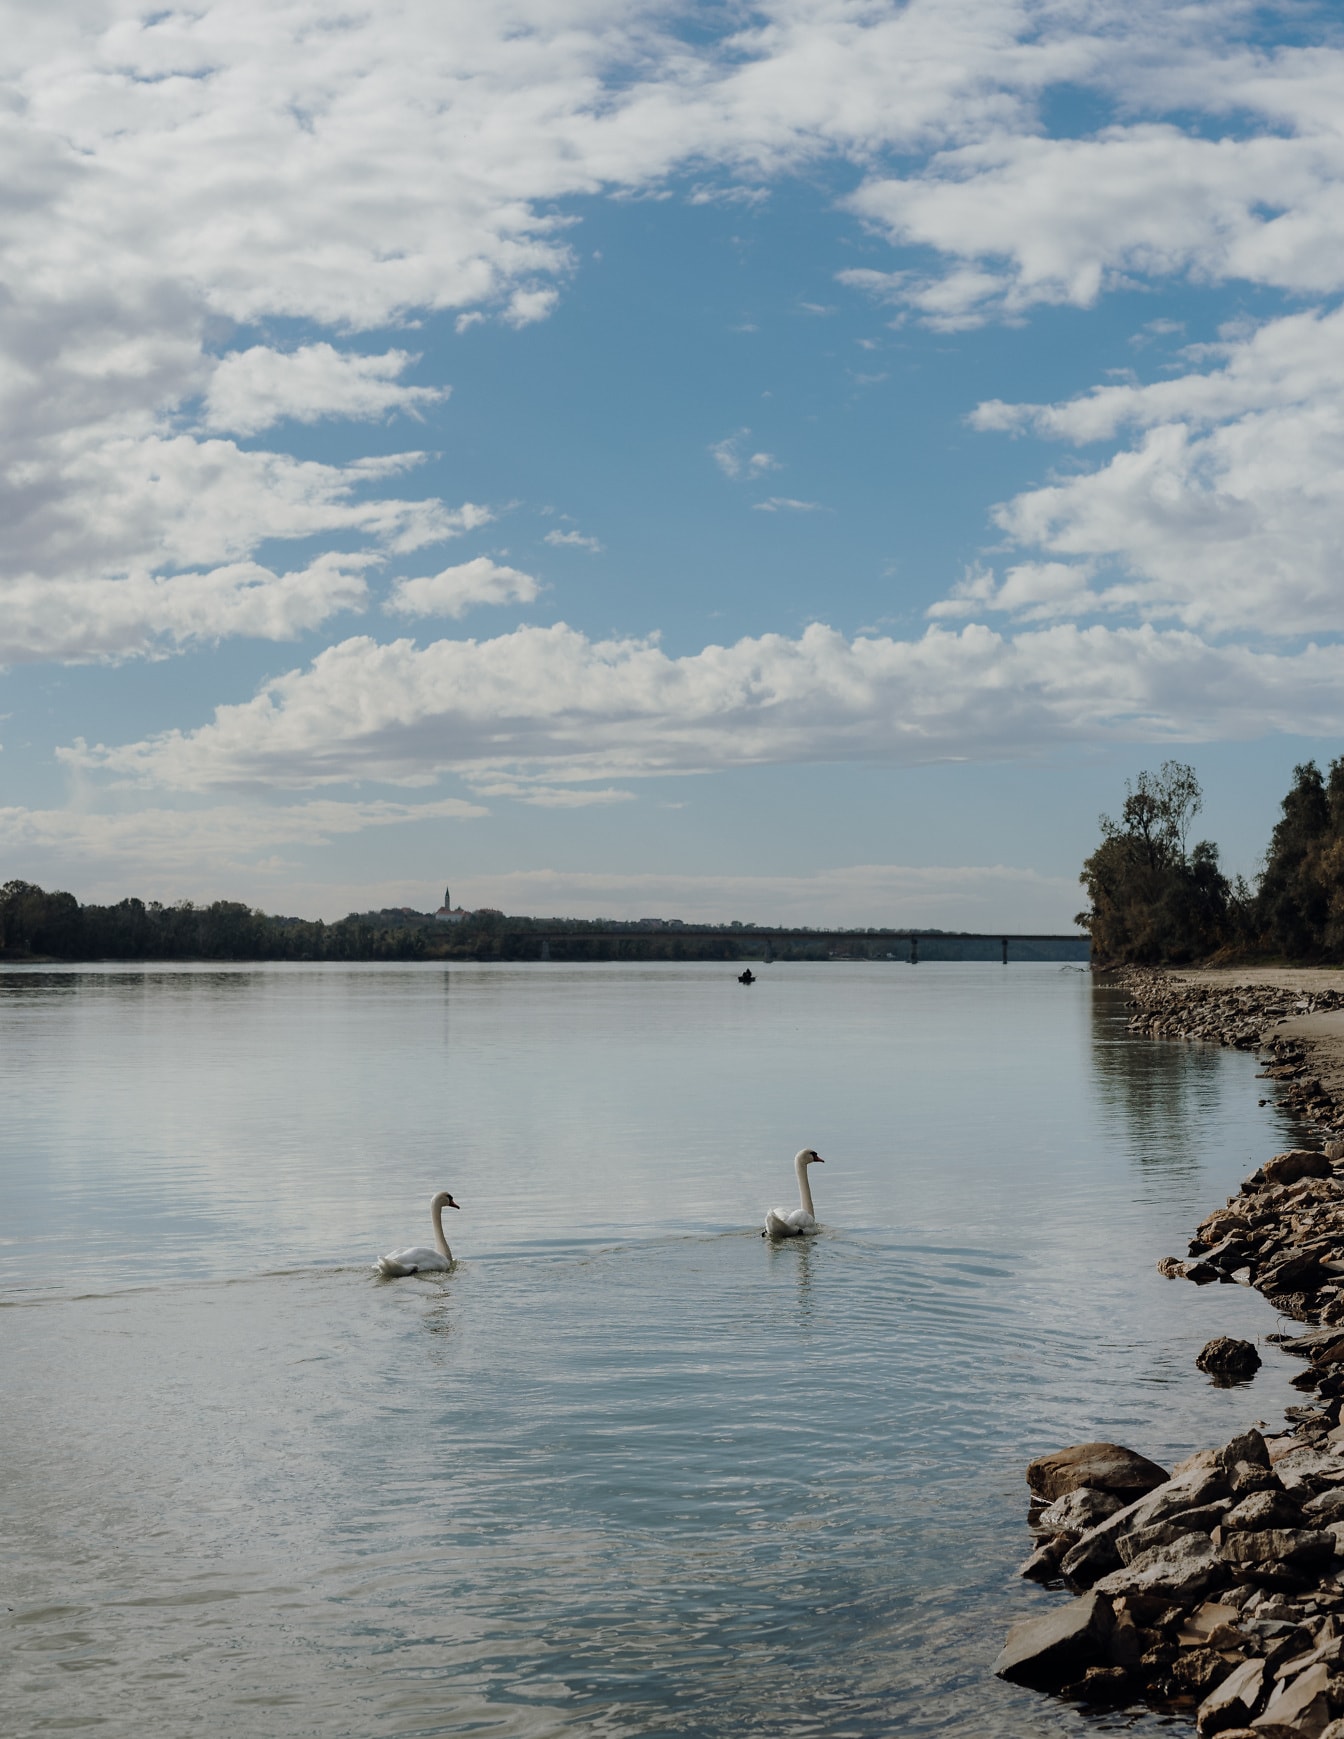 Svanefugle svømmer på Donau-floden med stenet flodbred